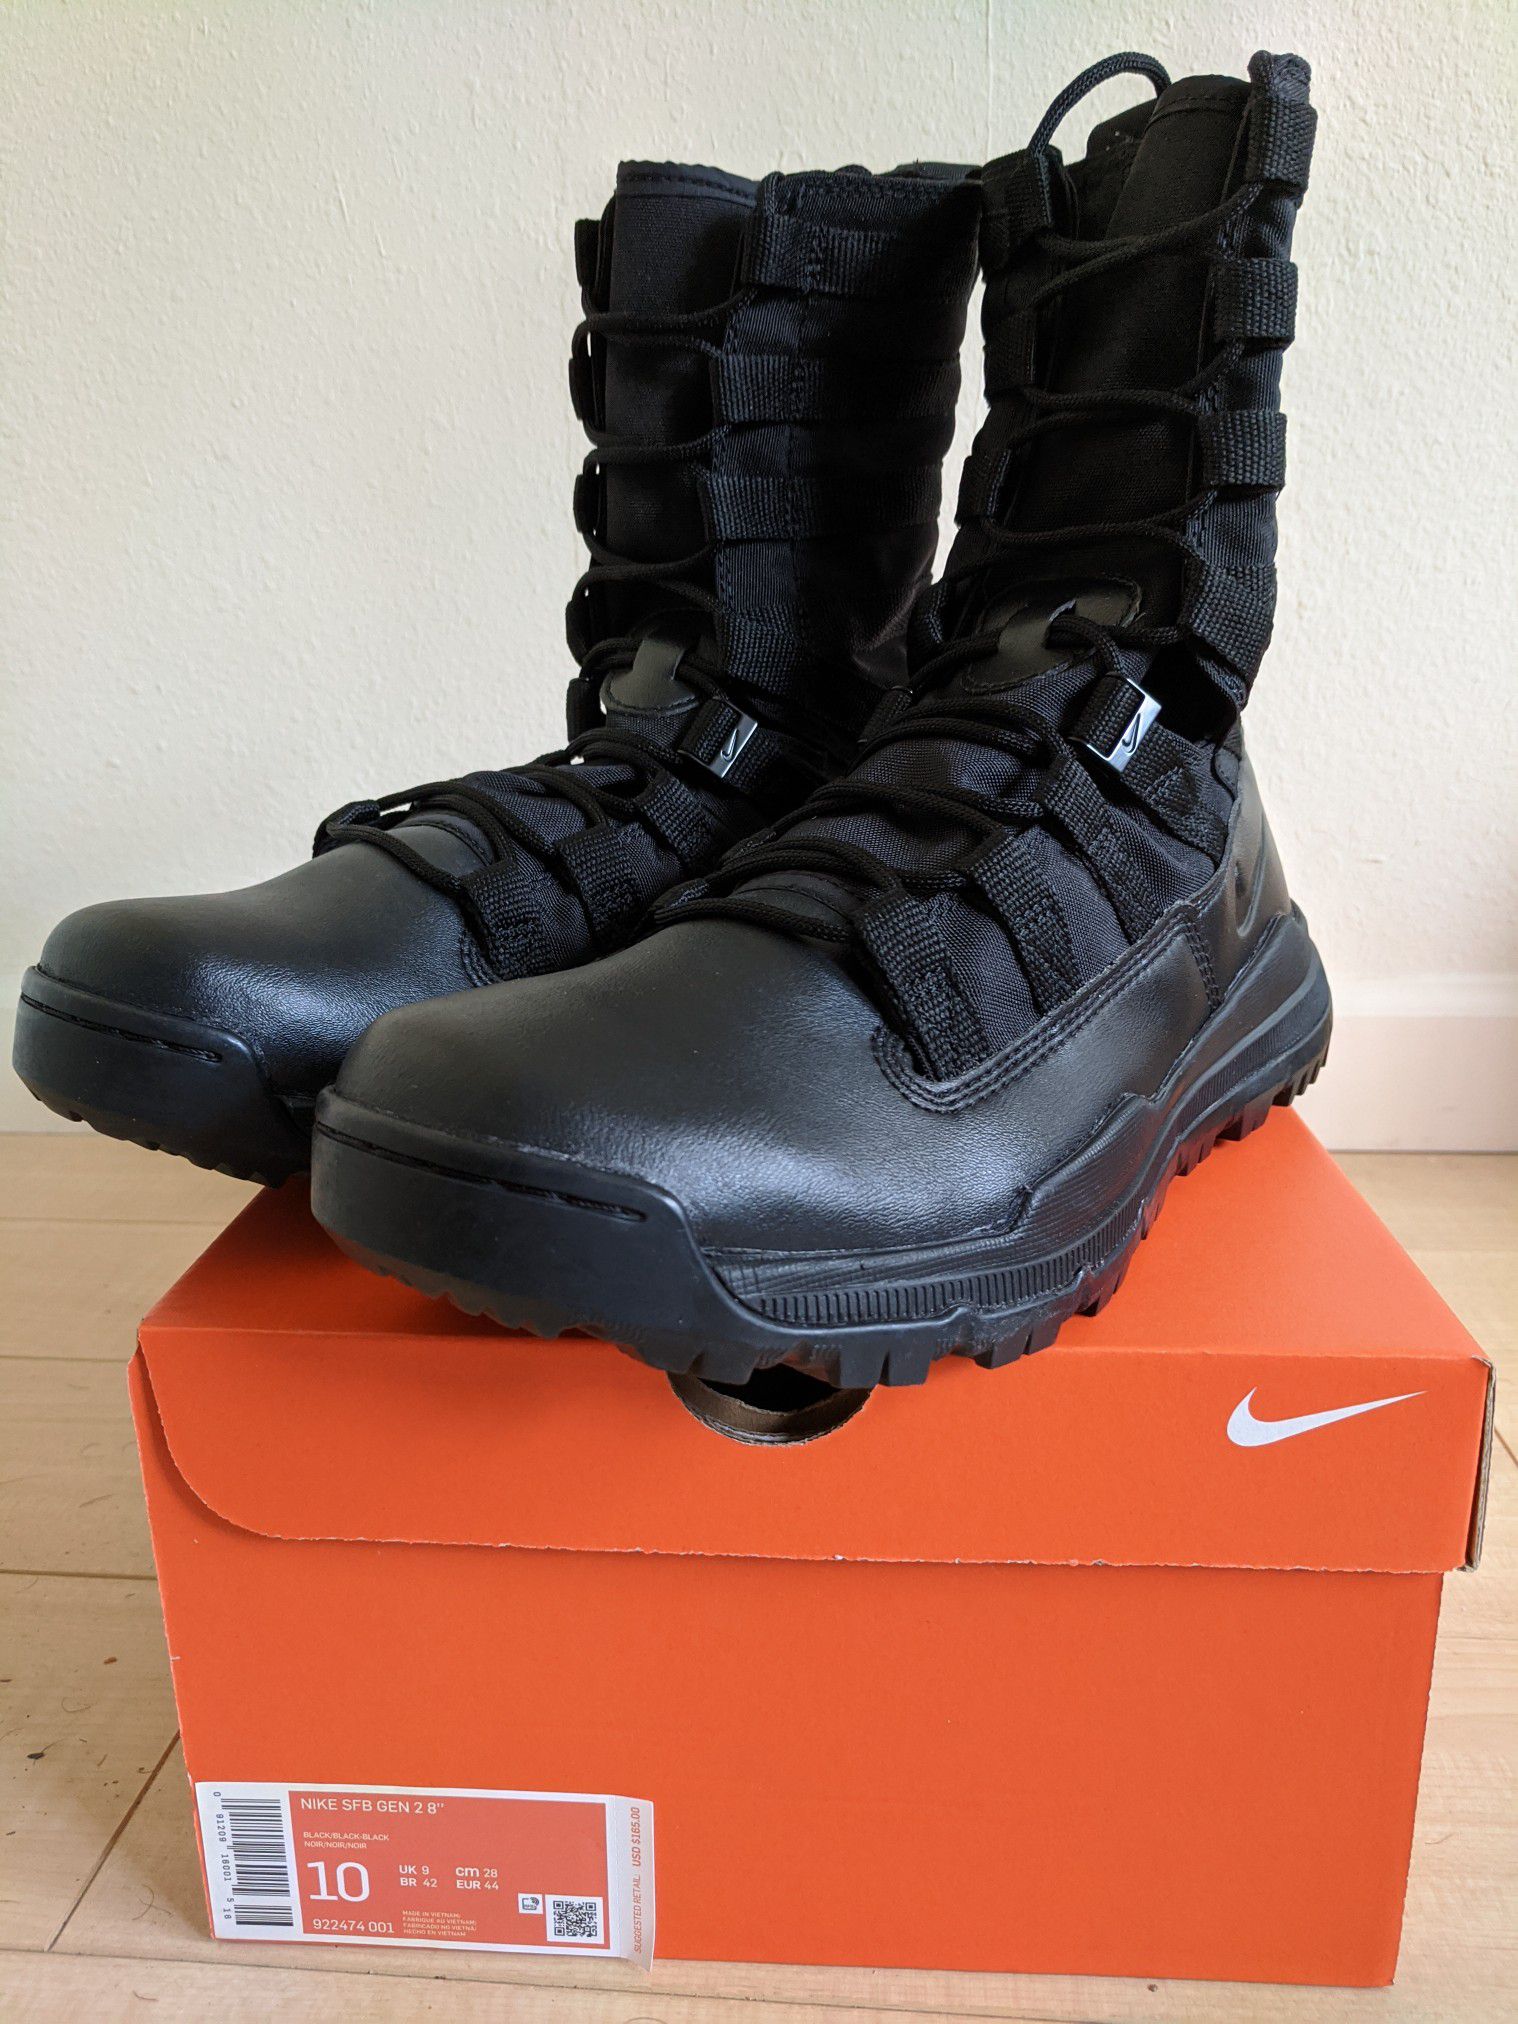 Nike Men's 8" SFB Gen 2 Boots Size 10